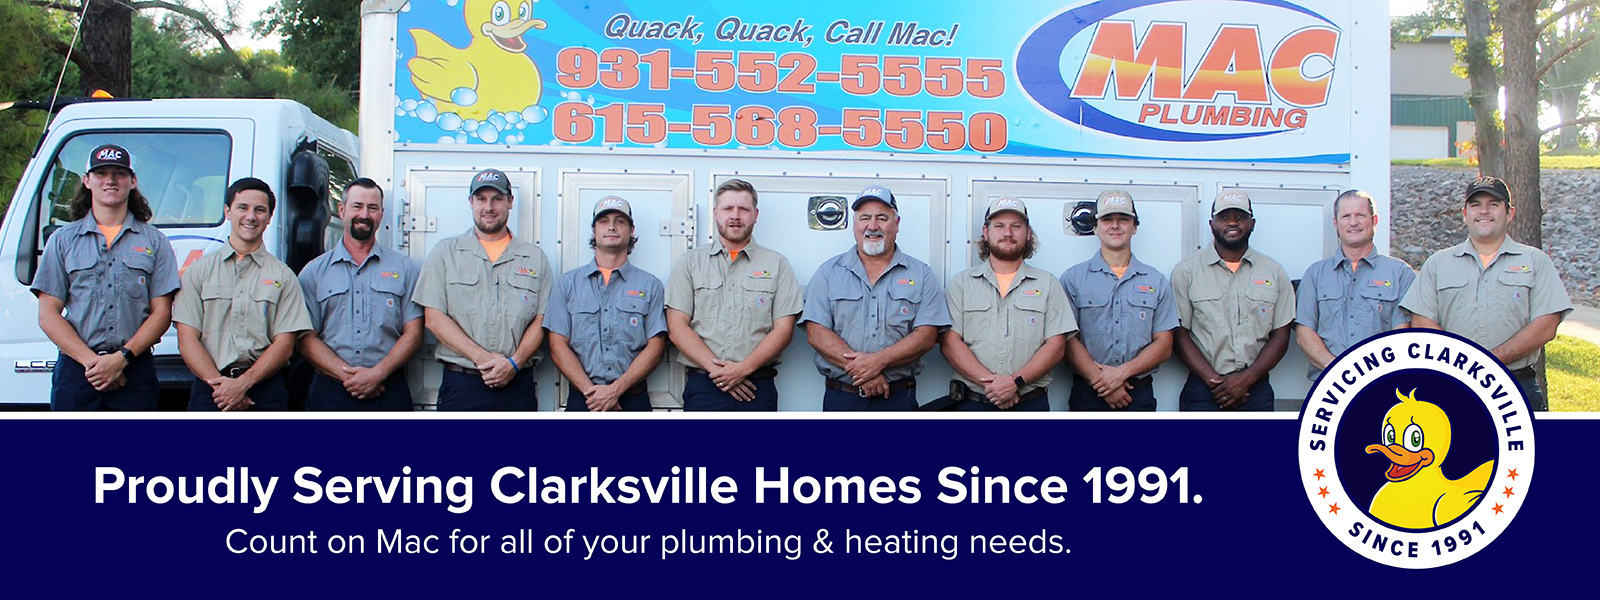 Mac-Team-Plumbing-Heating-Air-Clarksville